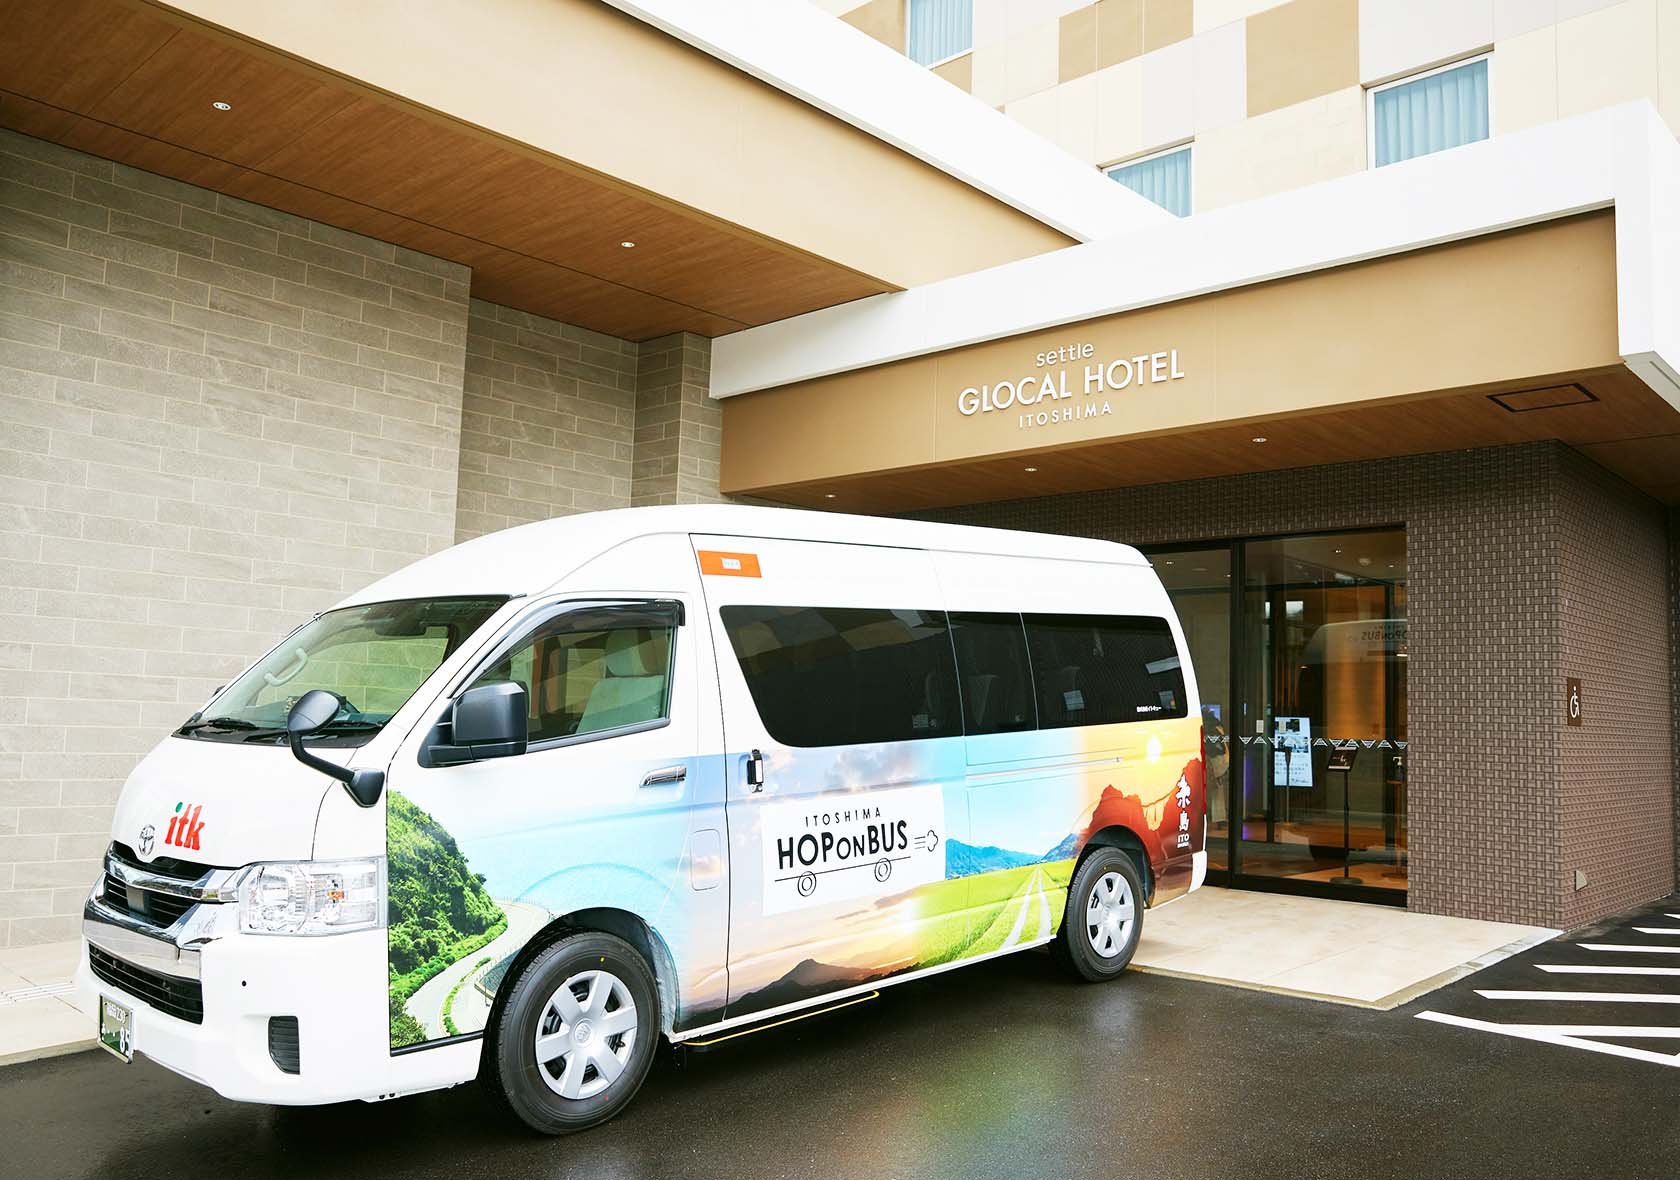 09_2022年1月14日〜2月14日の 1 カ月間モニター運行した「 ITOSHIMA HOP ON BUS 」。観光名所や人気店などを巡り、コースは 2 種類。料金は 1000円（モニター価格）。グローカルホテル糸島でも乗降できる 。